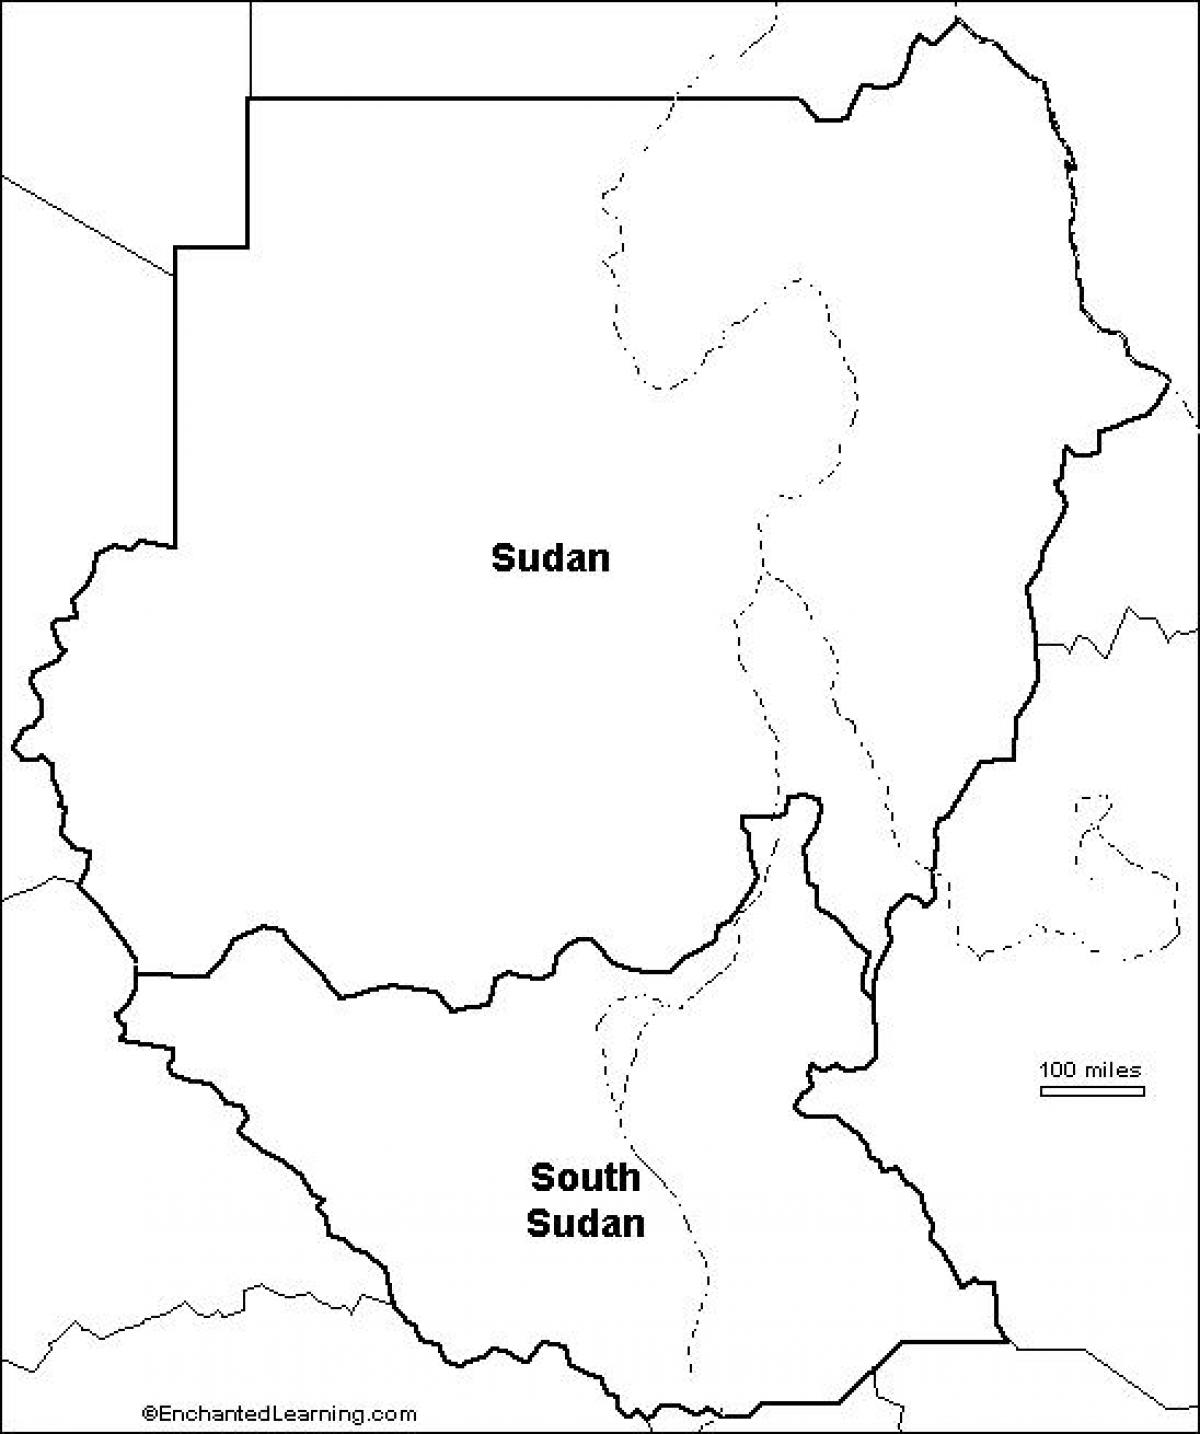 地図のスーダン白